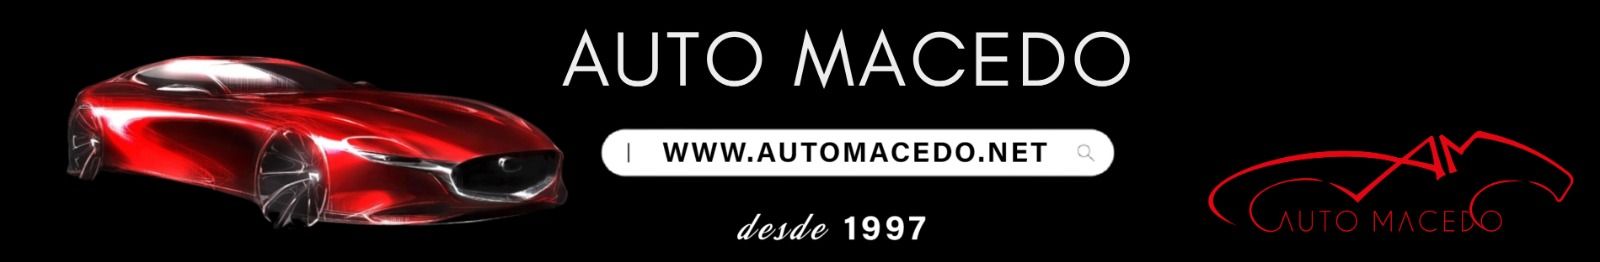 Auto Macedo top banner